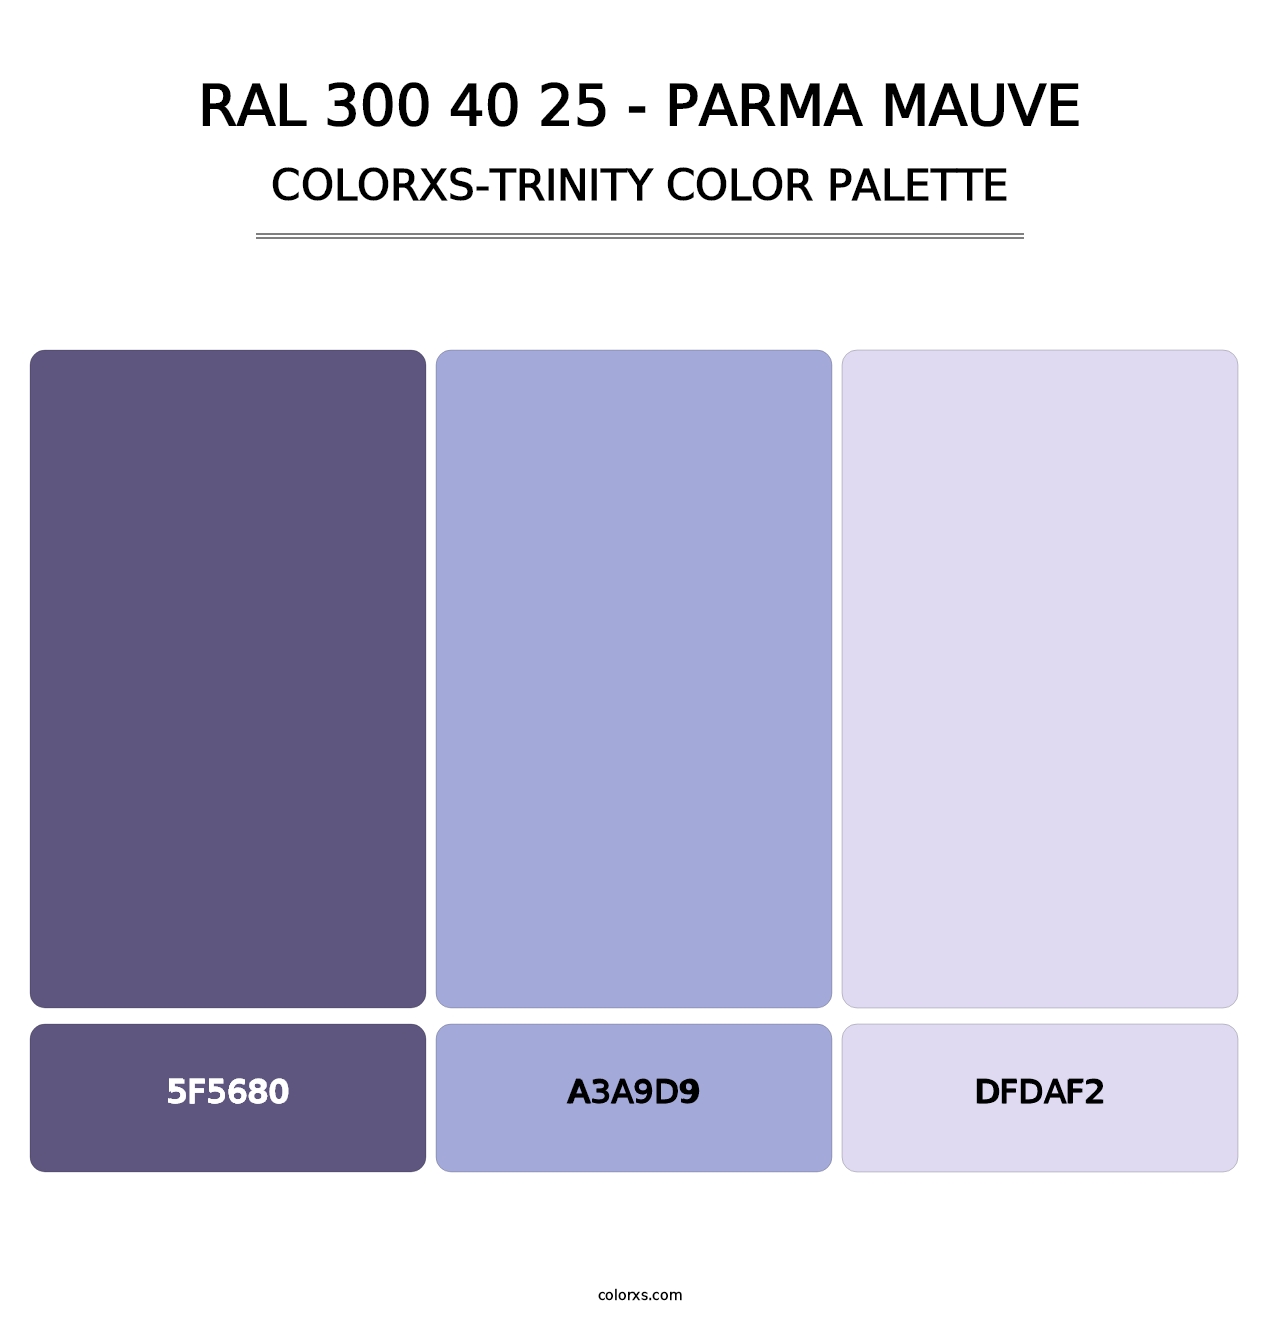 RAL 300 40 25 - Parma Mauve - Colorxs Trinity Palette